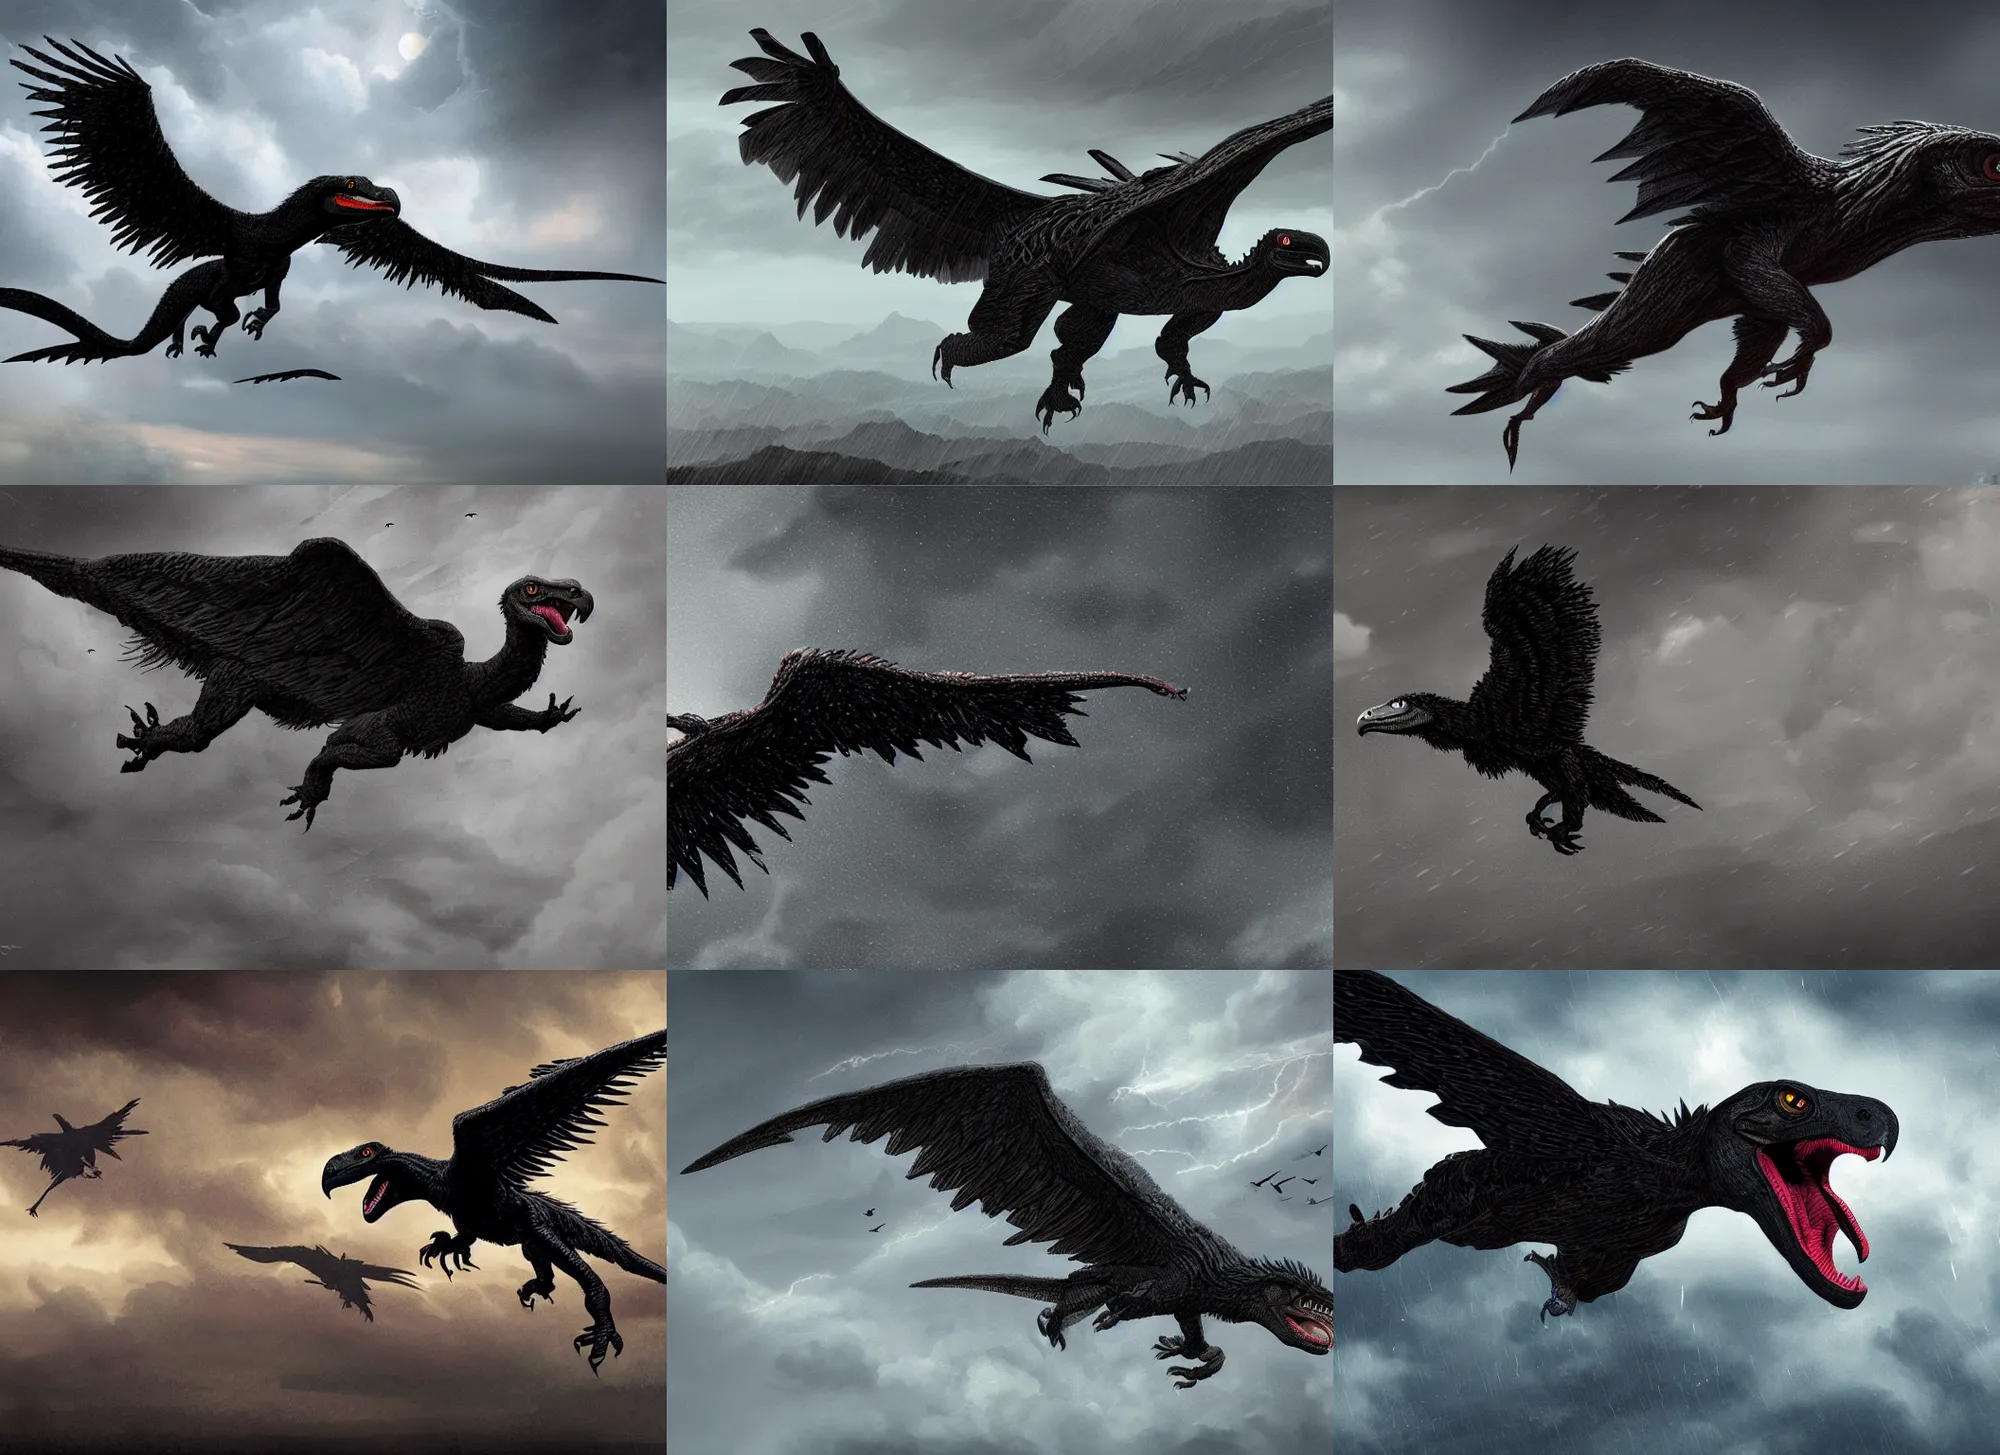 Prompt: giant black velociraptor-vulture flying in storm, intricate, highly detailed, artstation, sharp focus, illustration, jurgens, rutkowski, simonetti